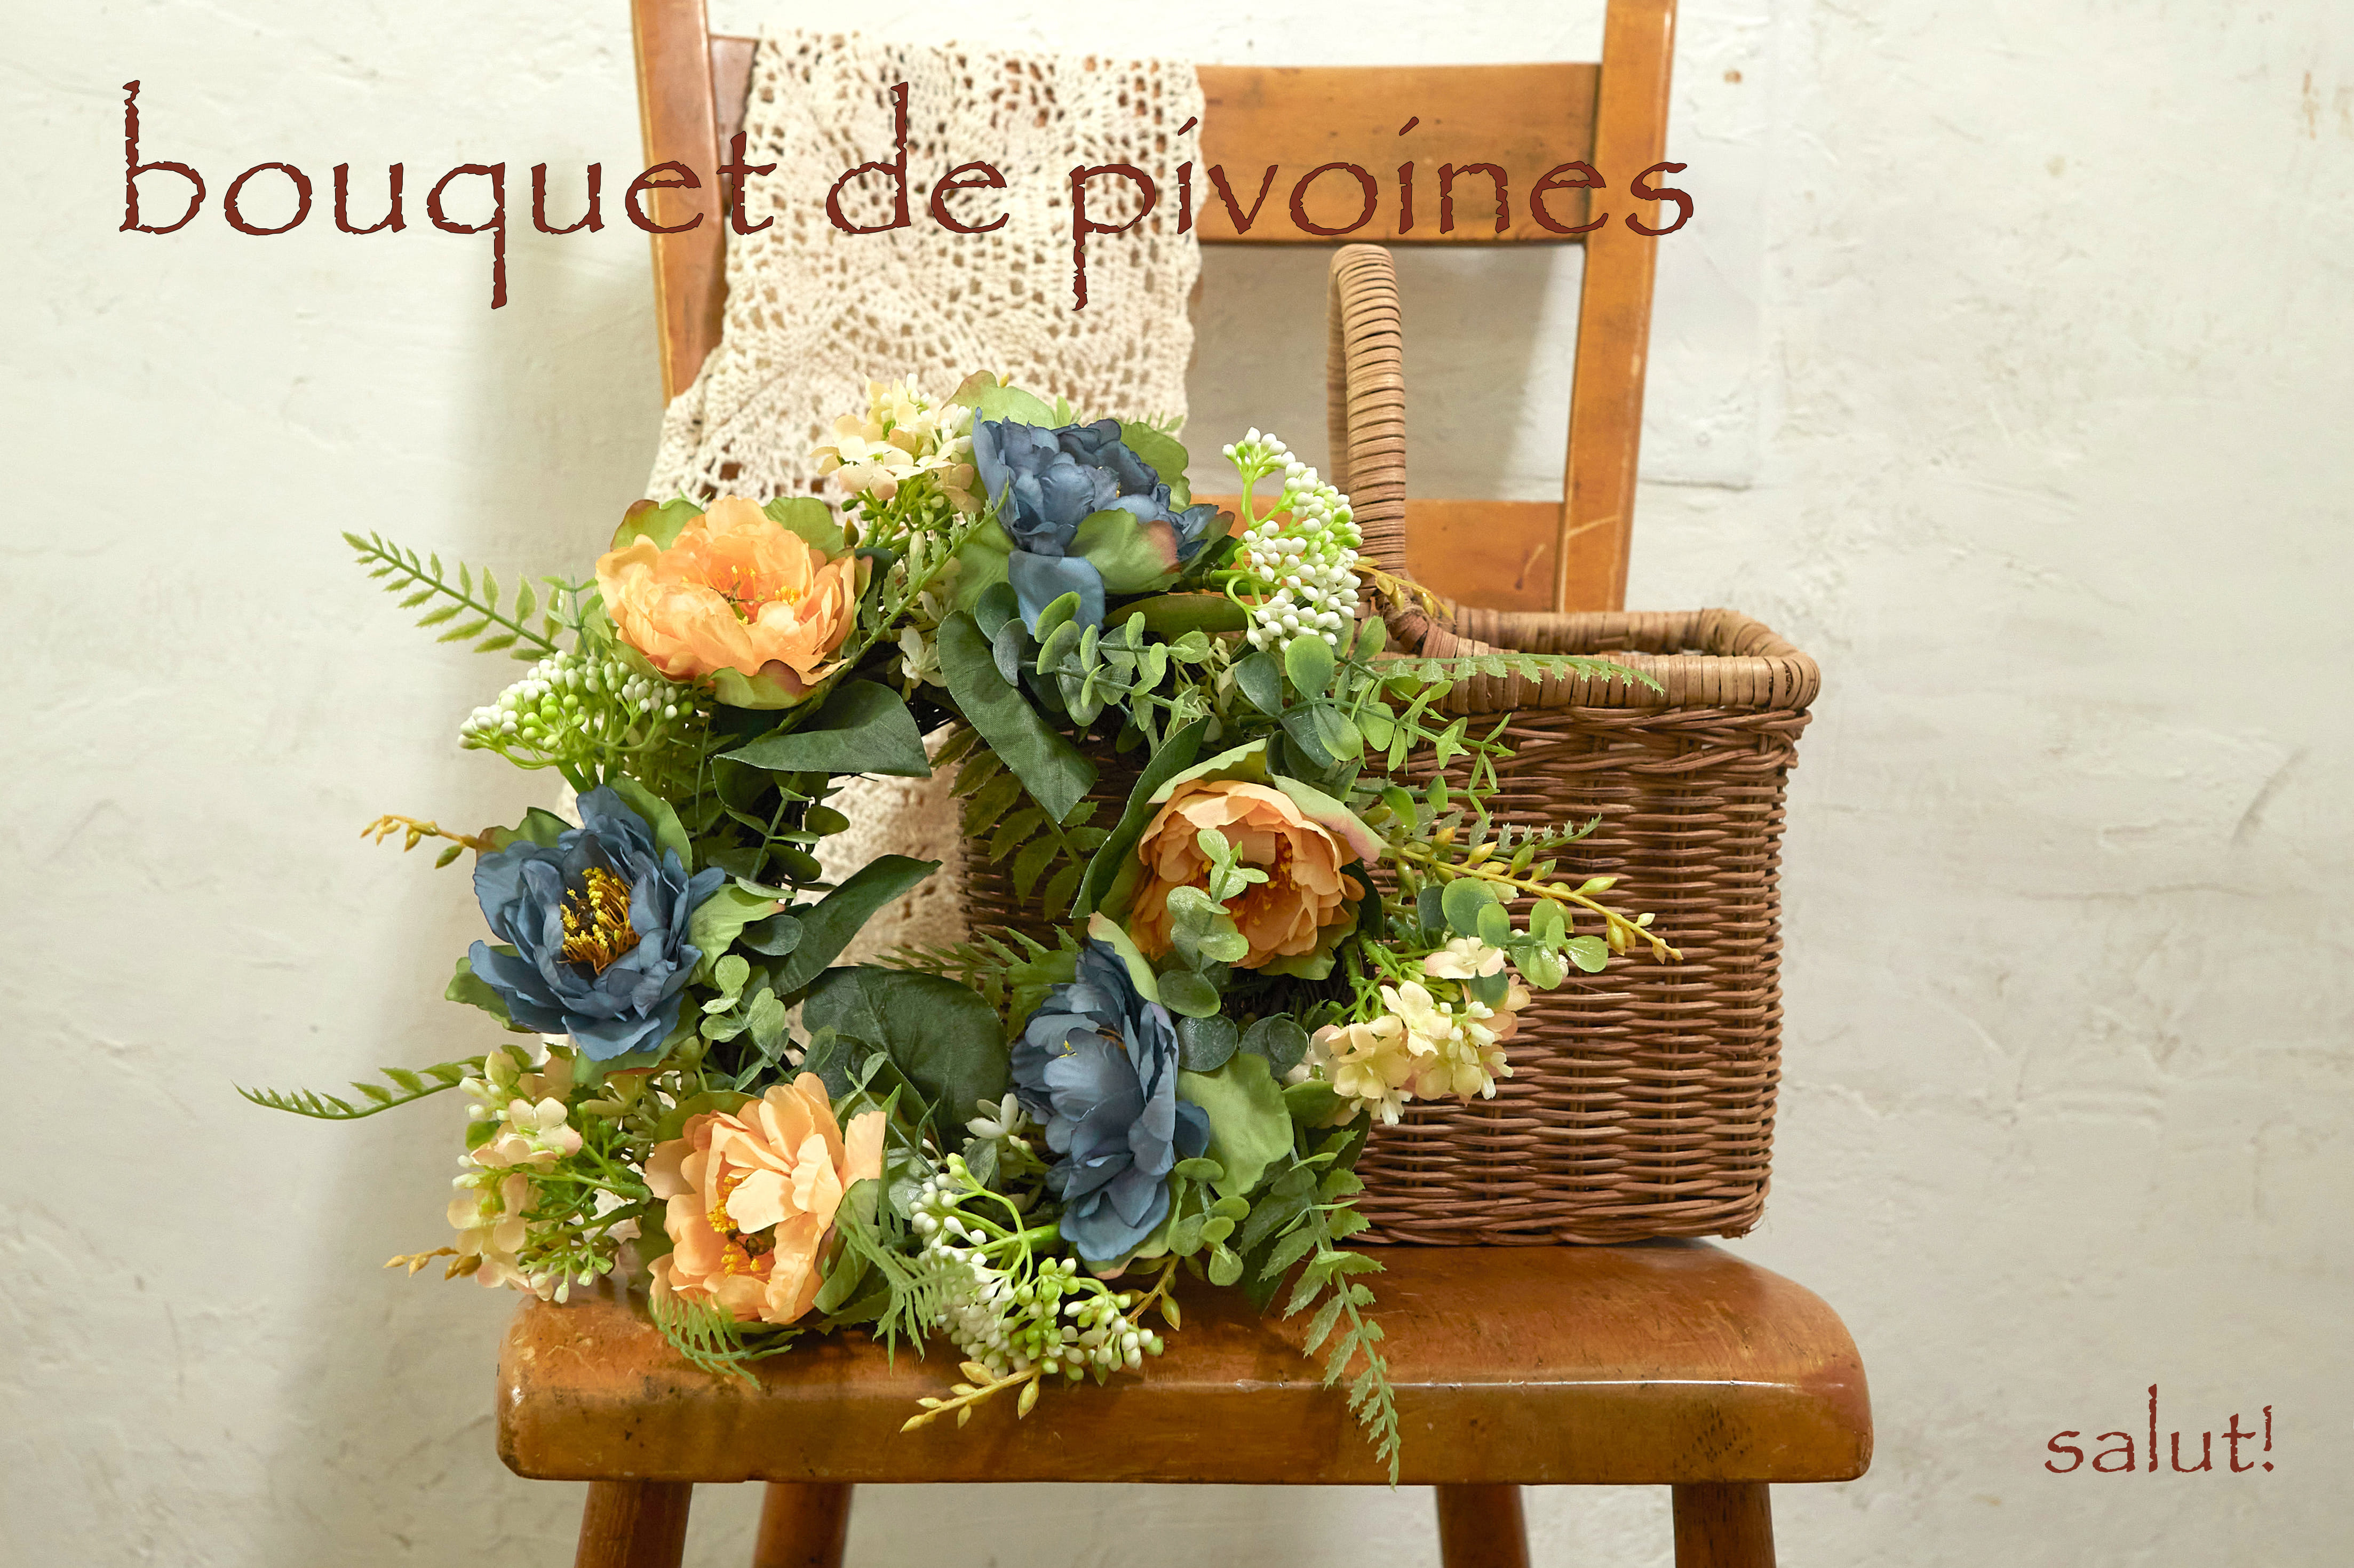 salut!_bouquet de pivoines
			